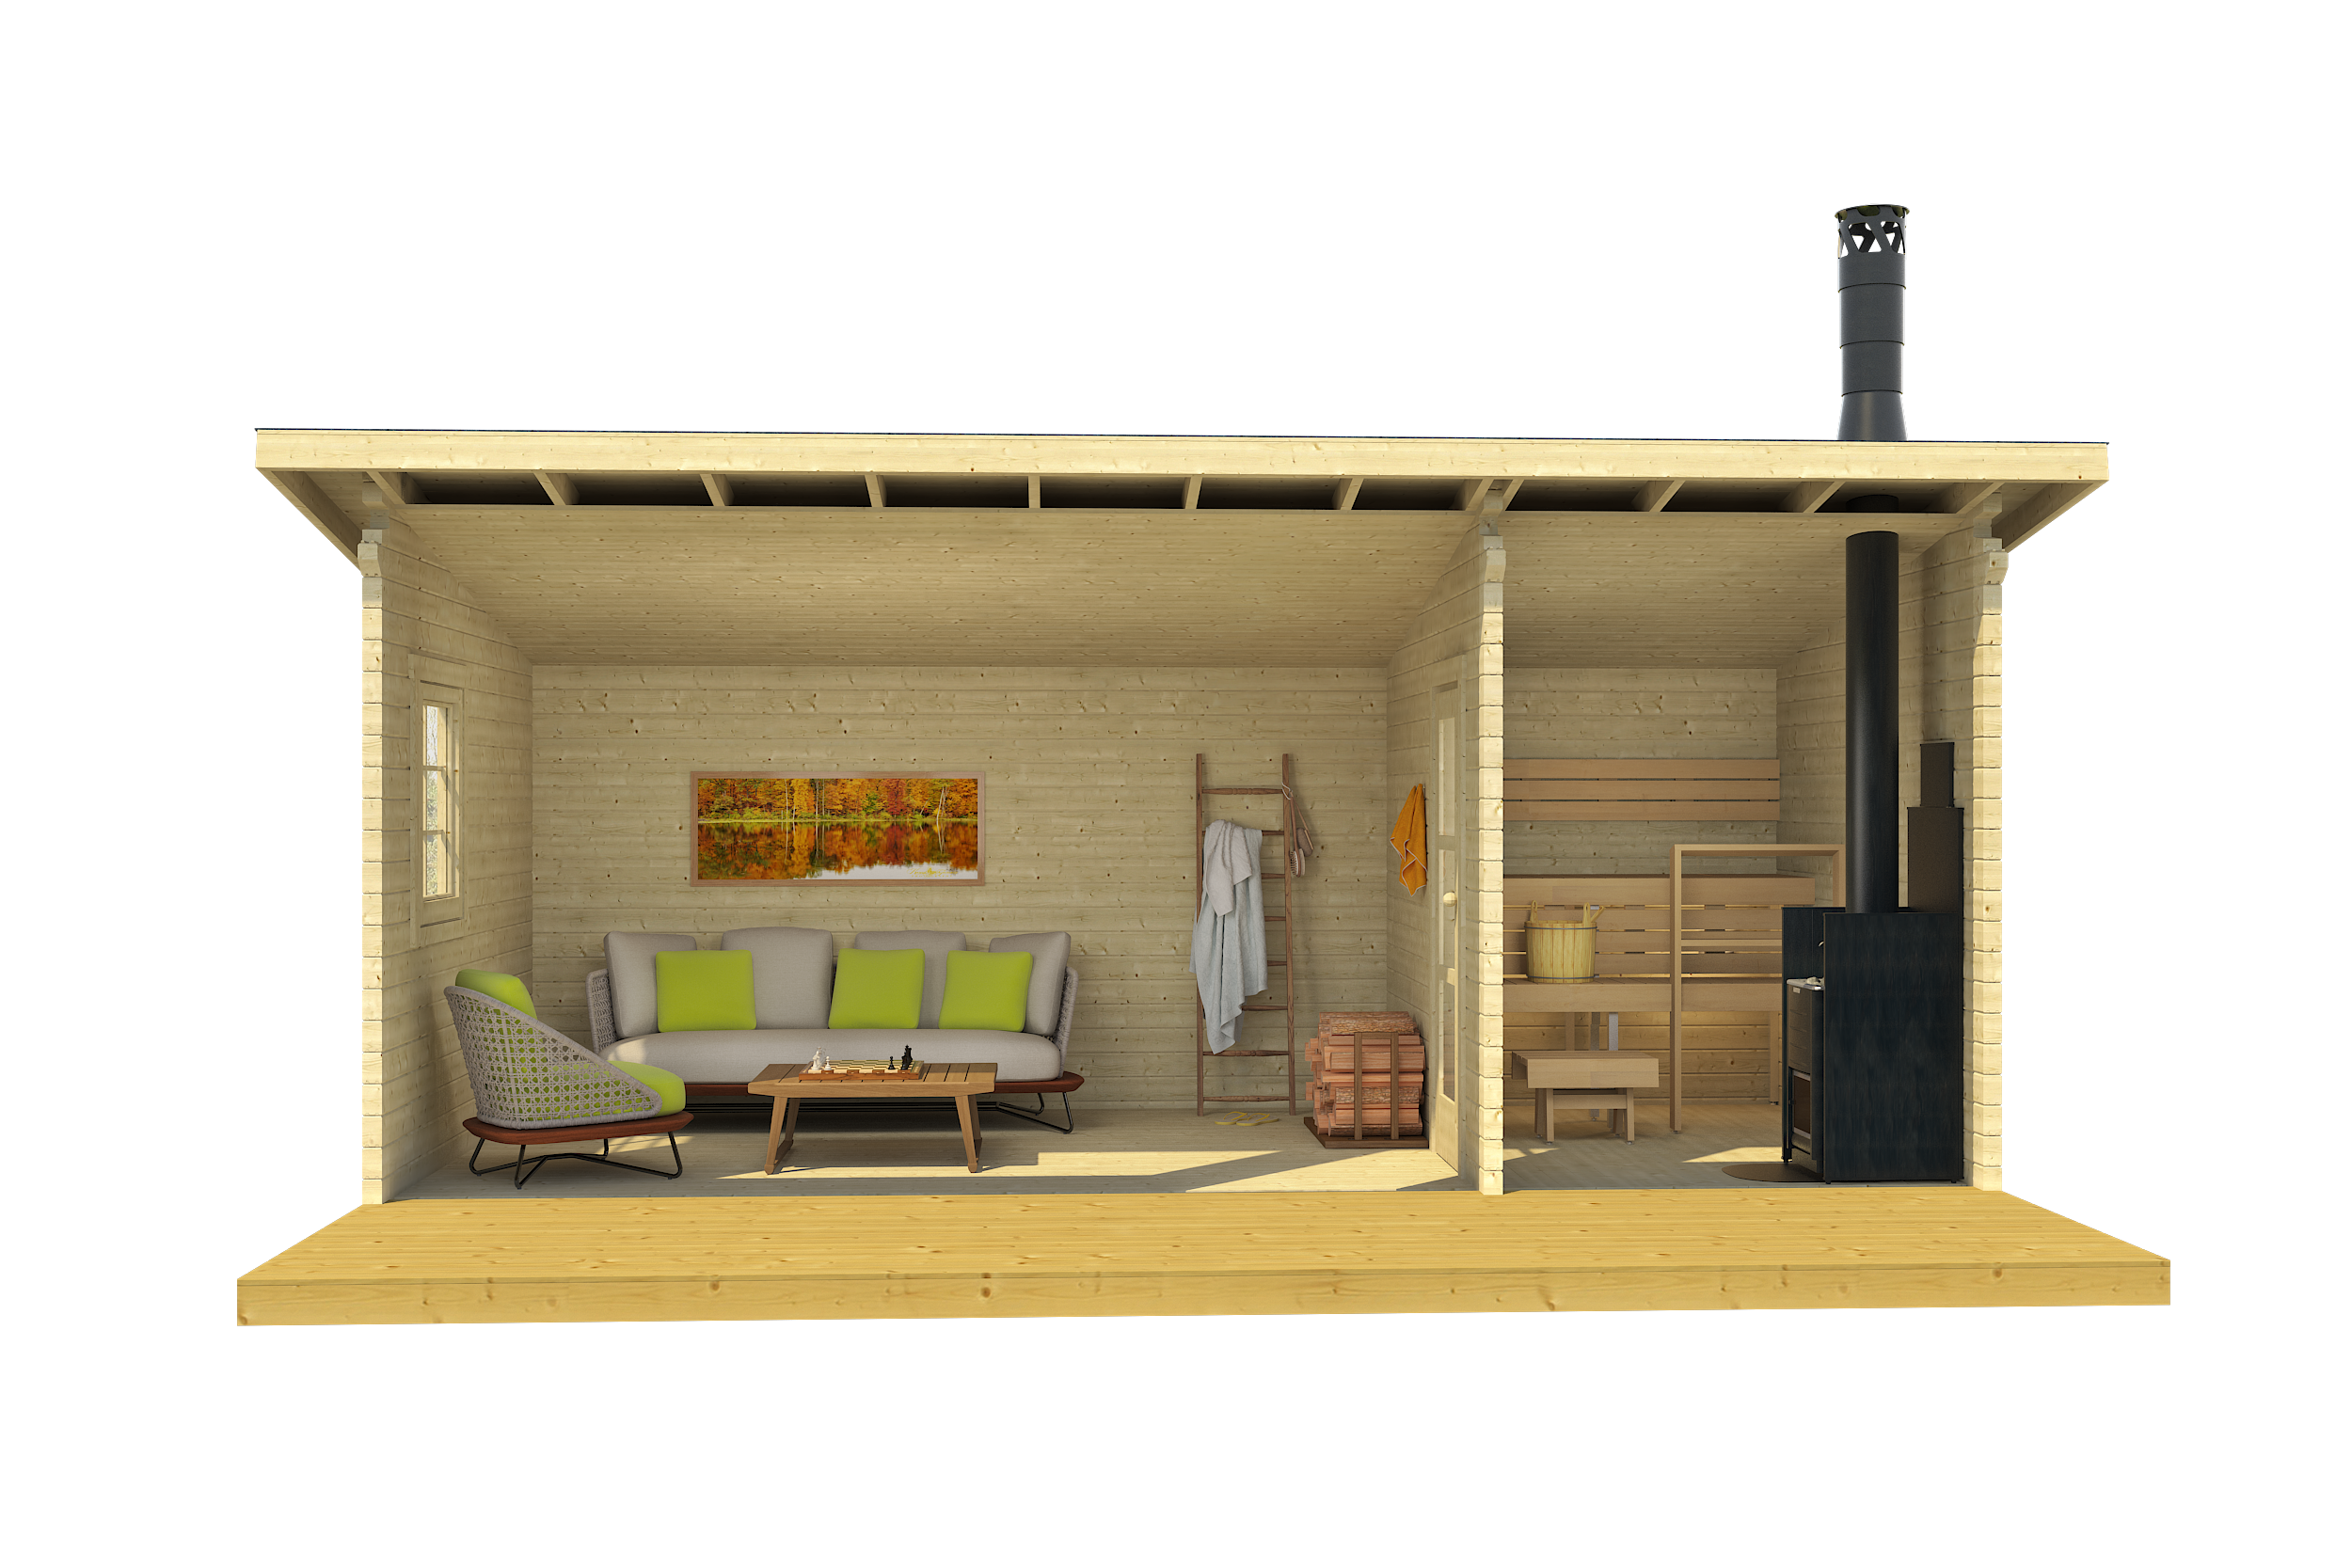 MODERNI PIHASAUNA 26 6.2x2.8m Sauna Log Cabin Front Internal